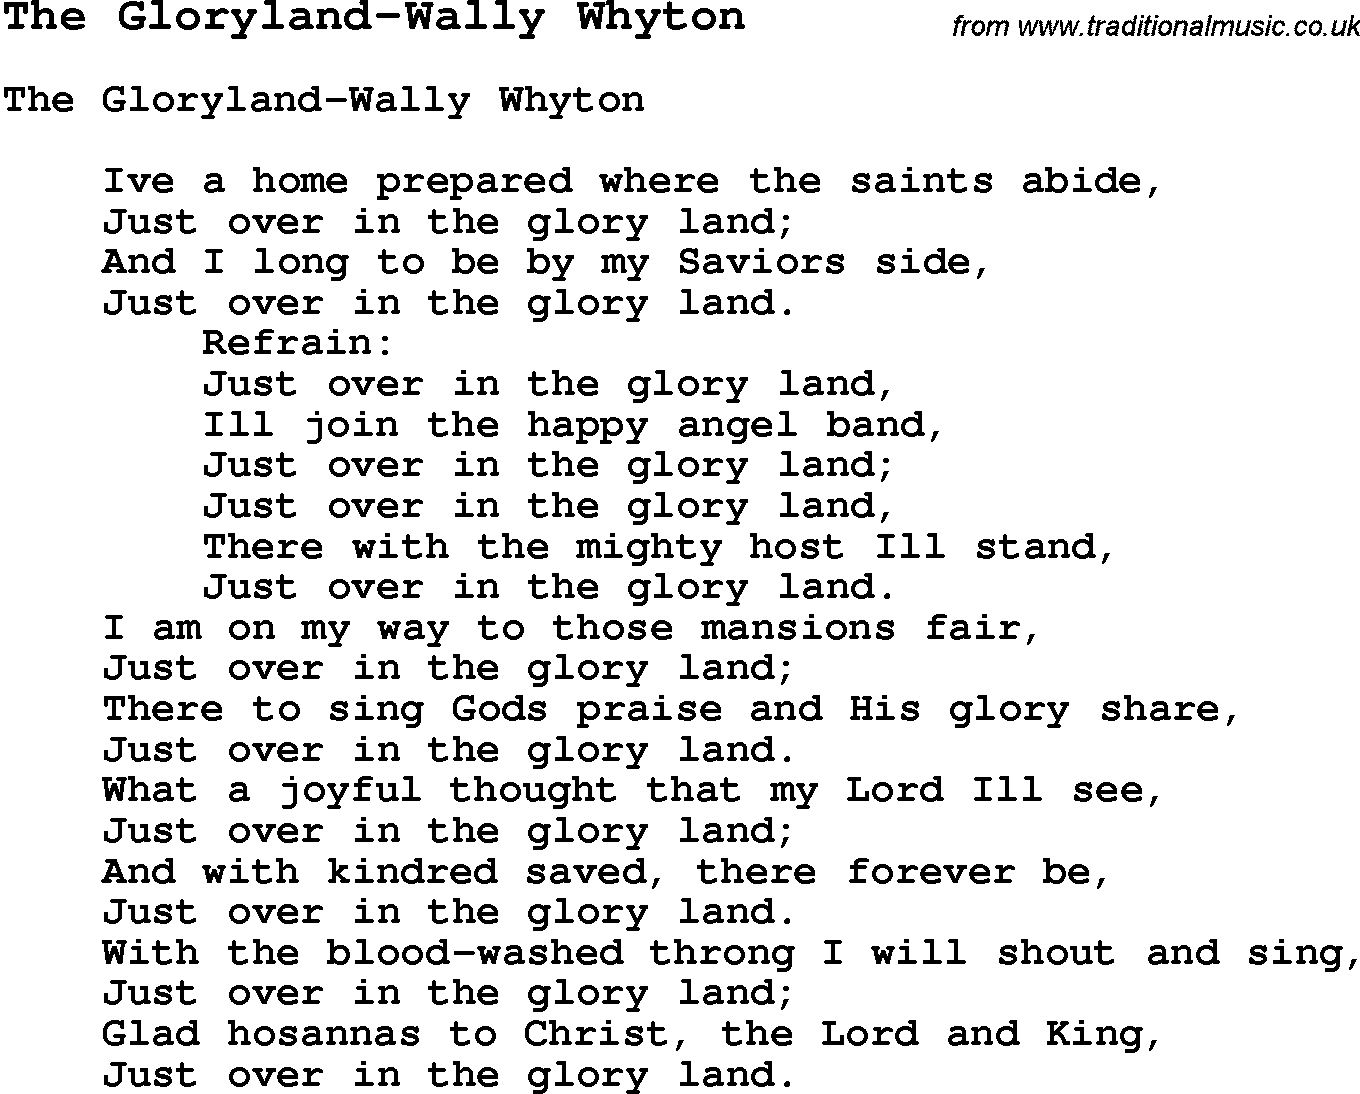 Skiffle Song Lyrics for The Gloryland-Wally Whyton.